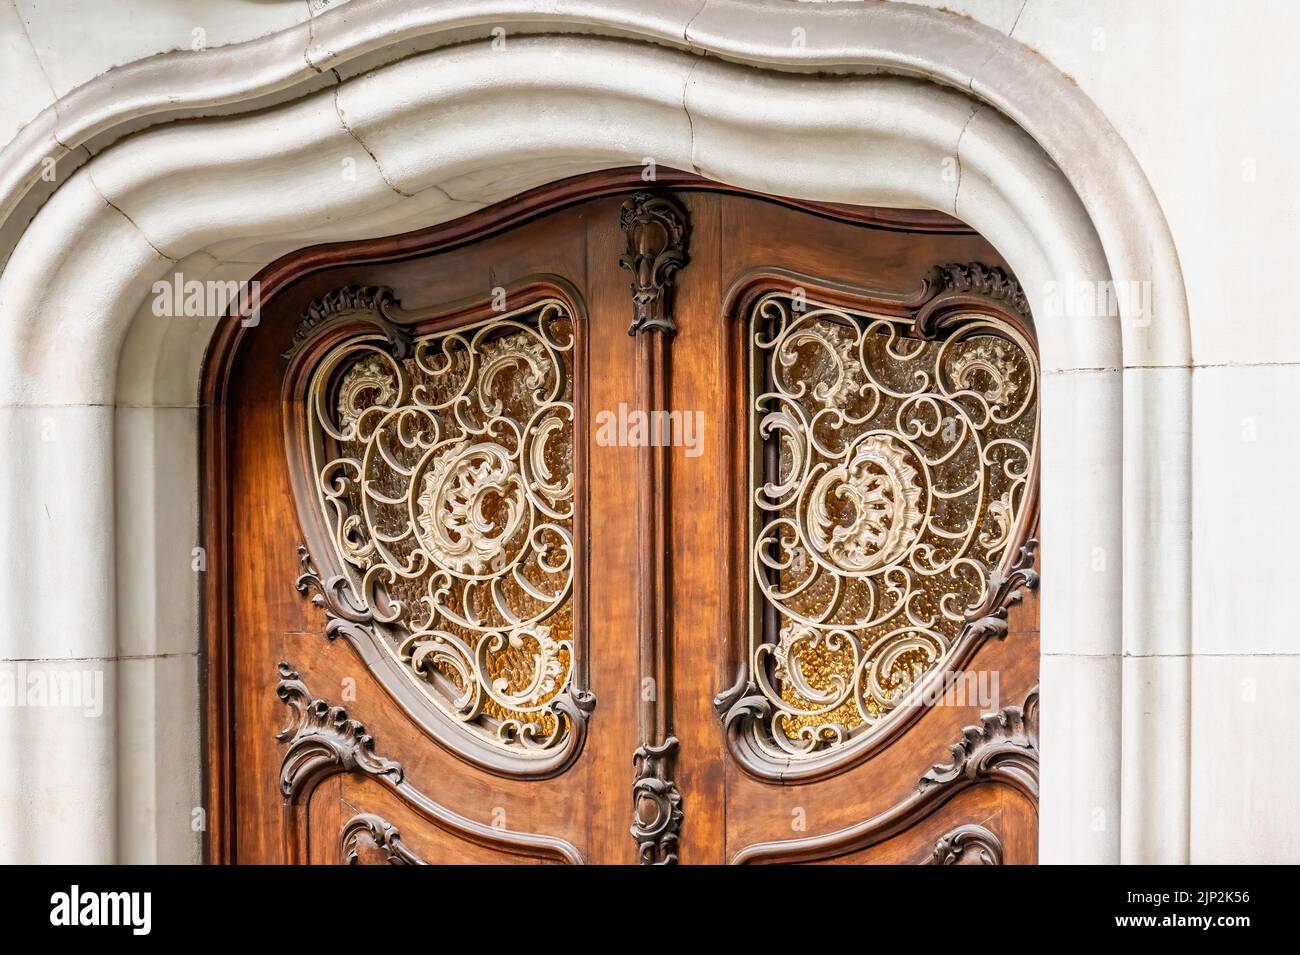 Particolare della vecchia architettura a Barcellona, Spagna Foto Stock